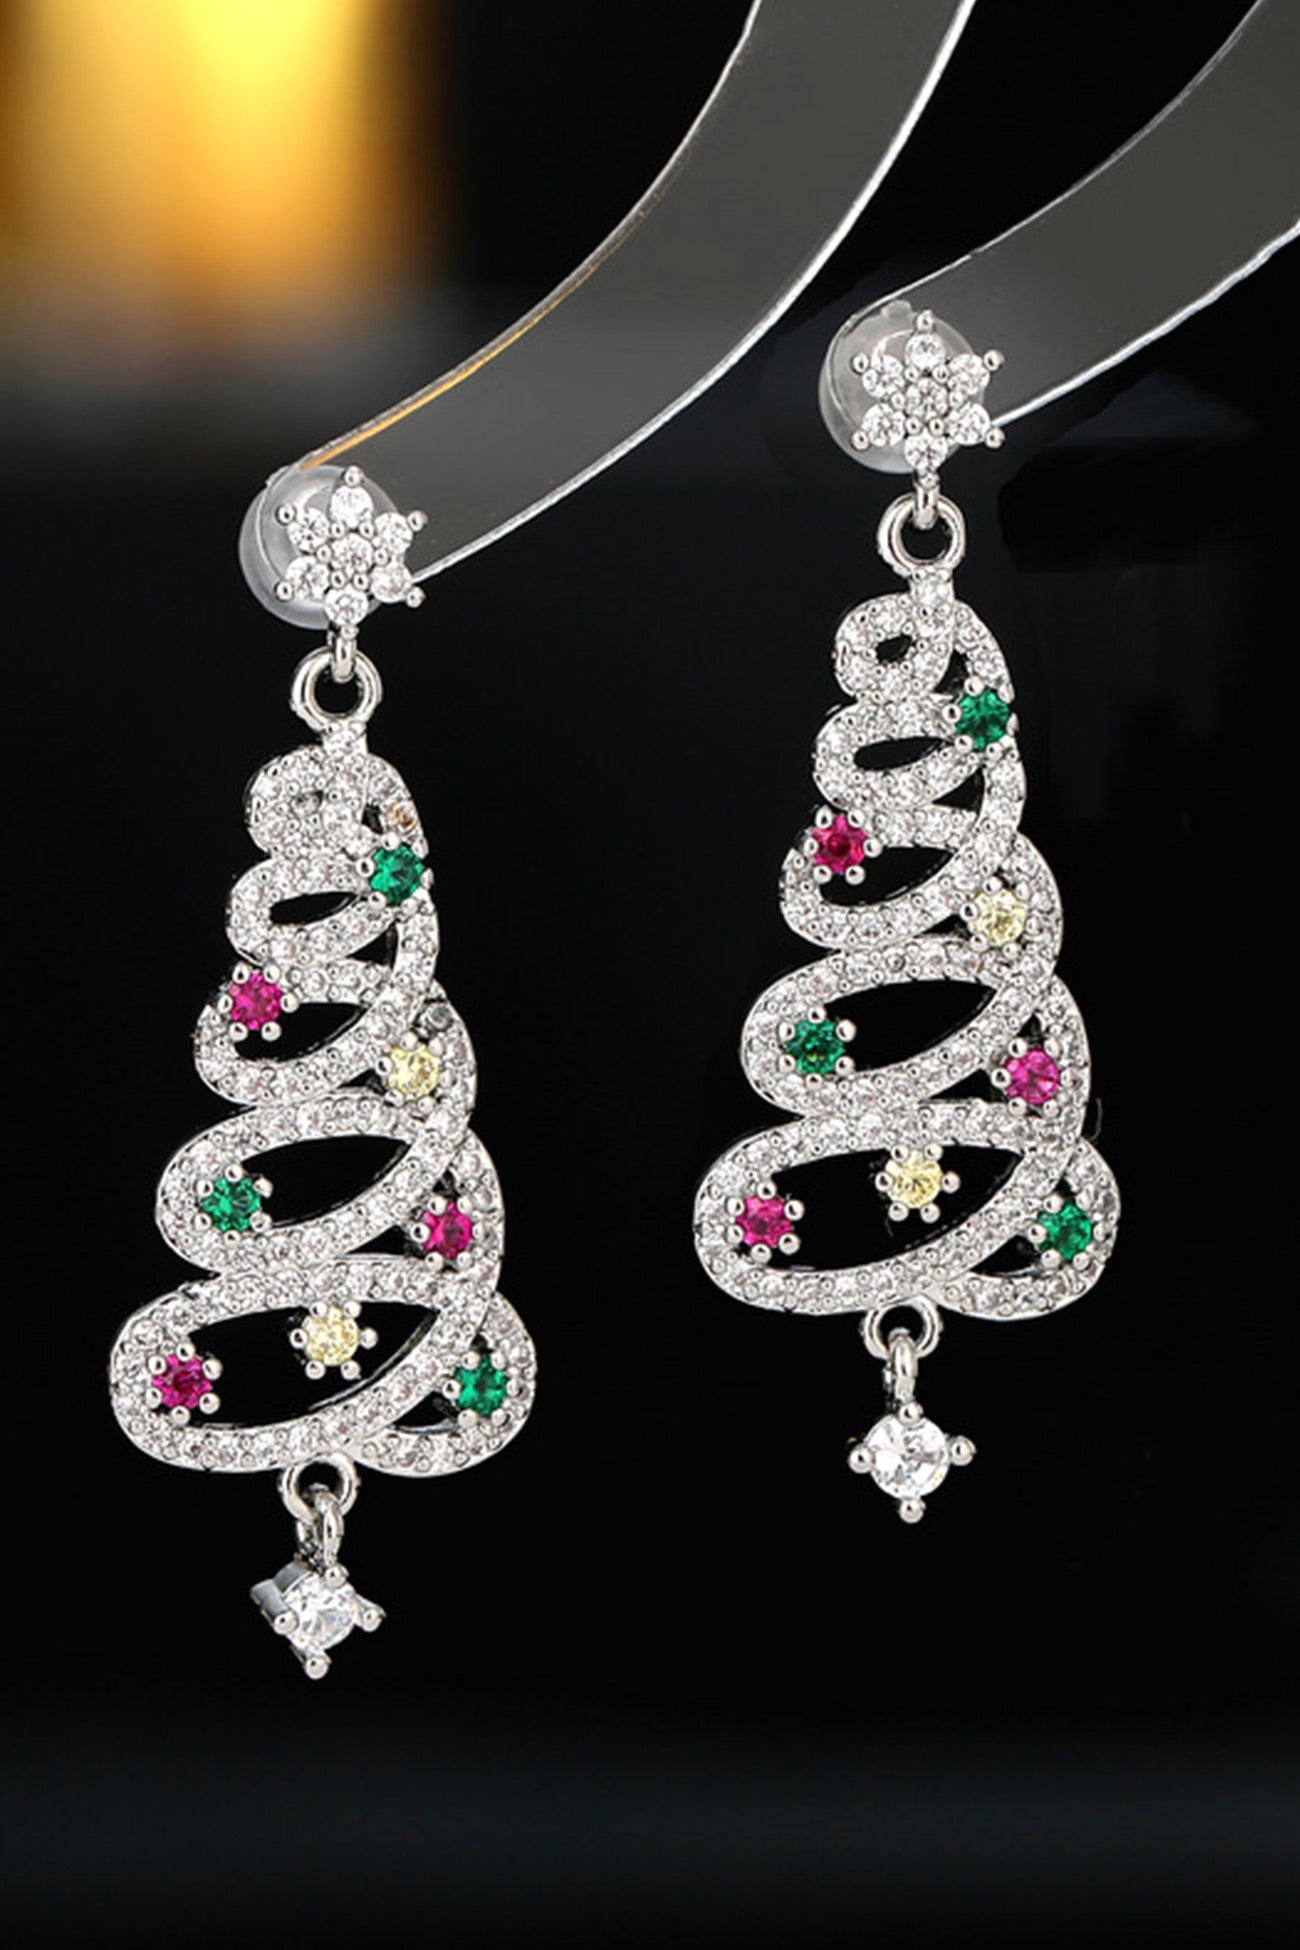 Zircon Snowflake Christmas Tree Earrings